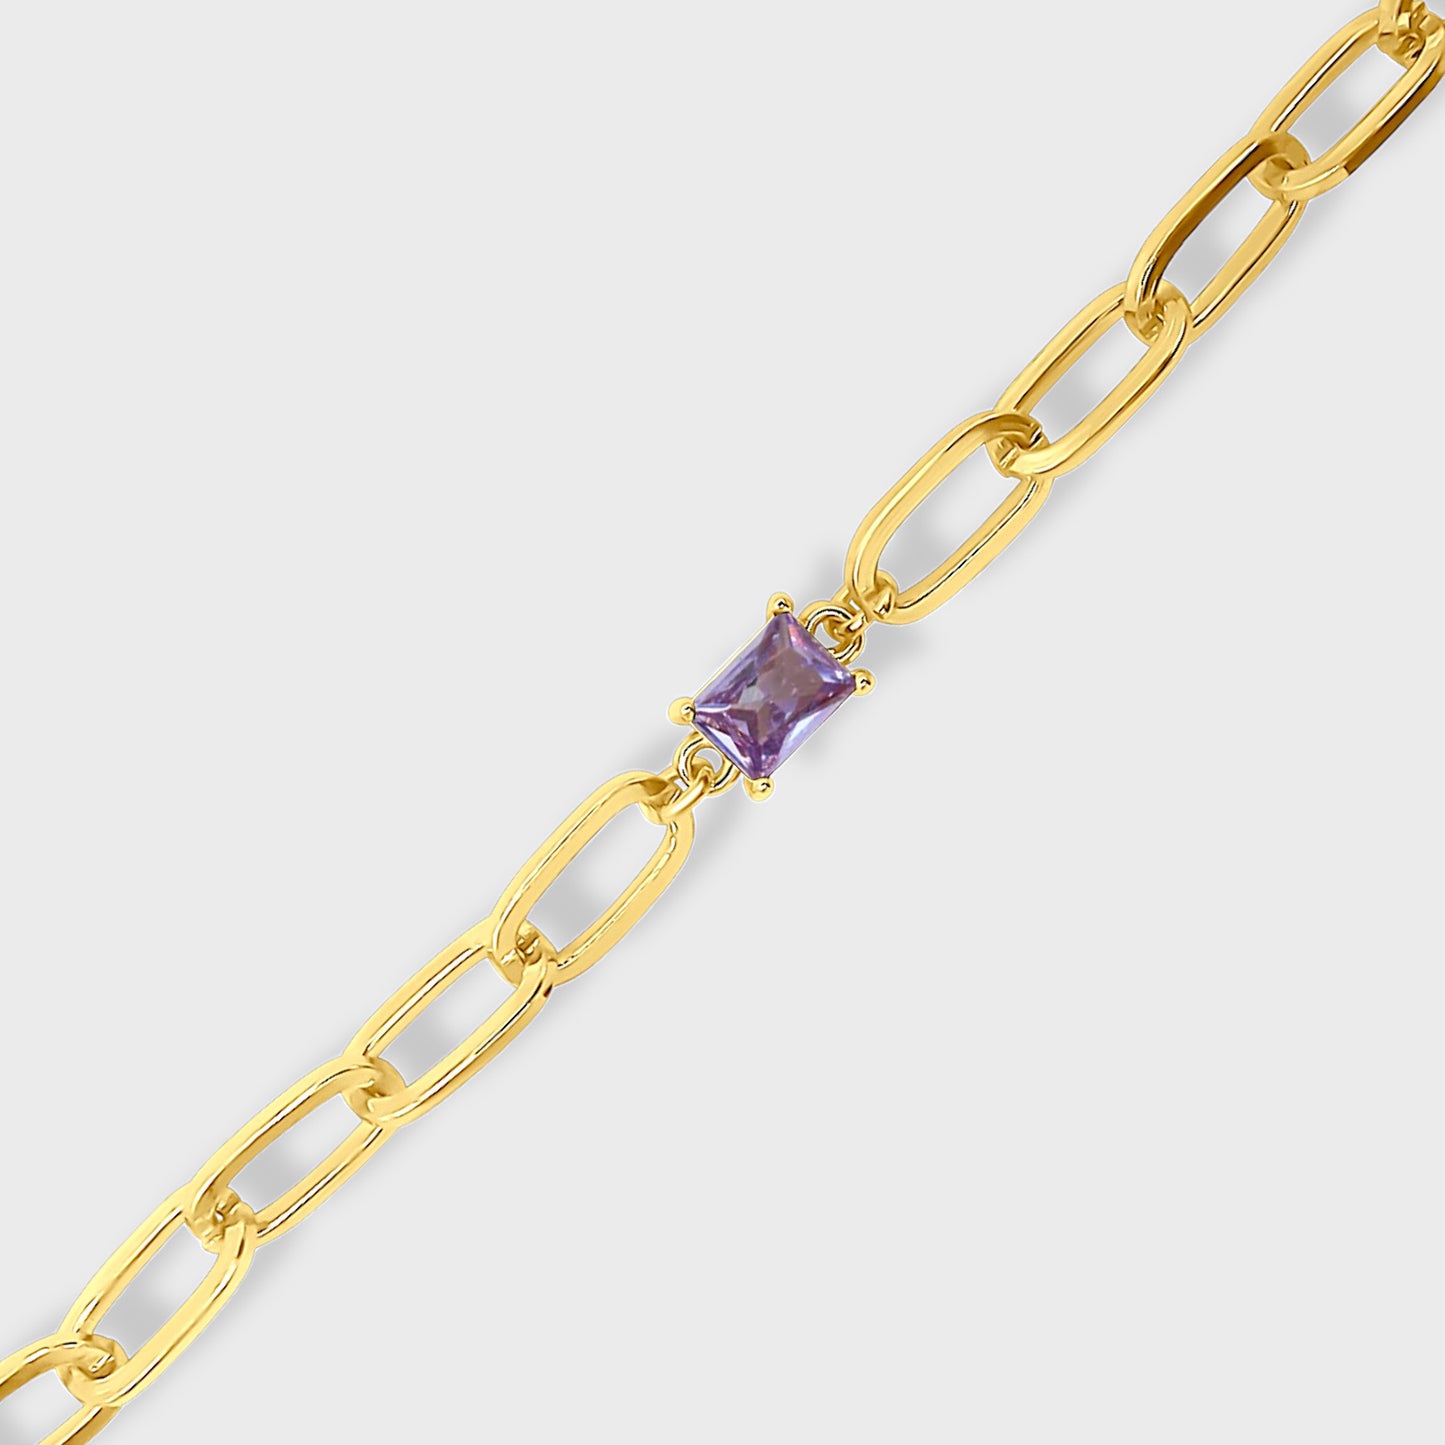 Alexandrite Gold Bracelet